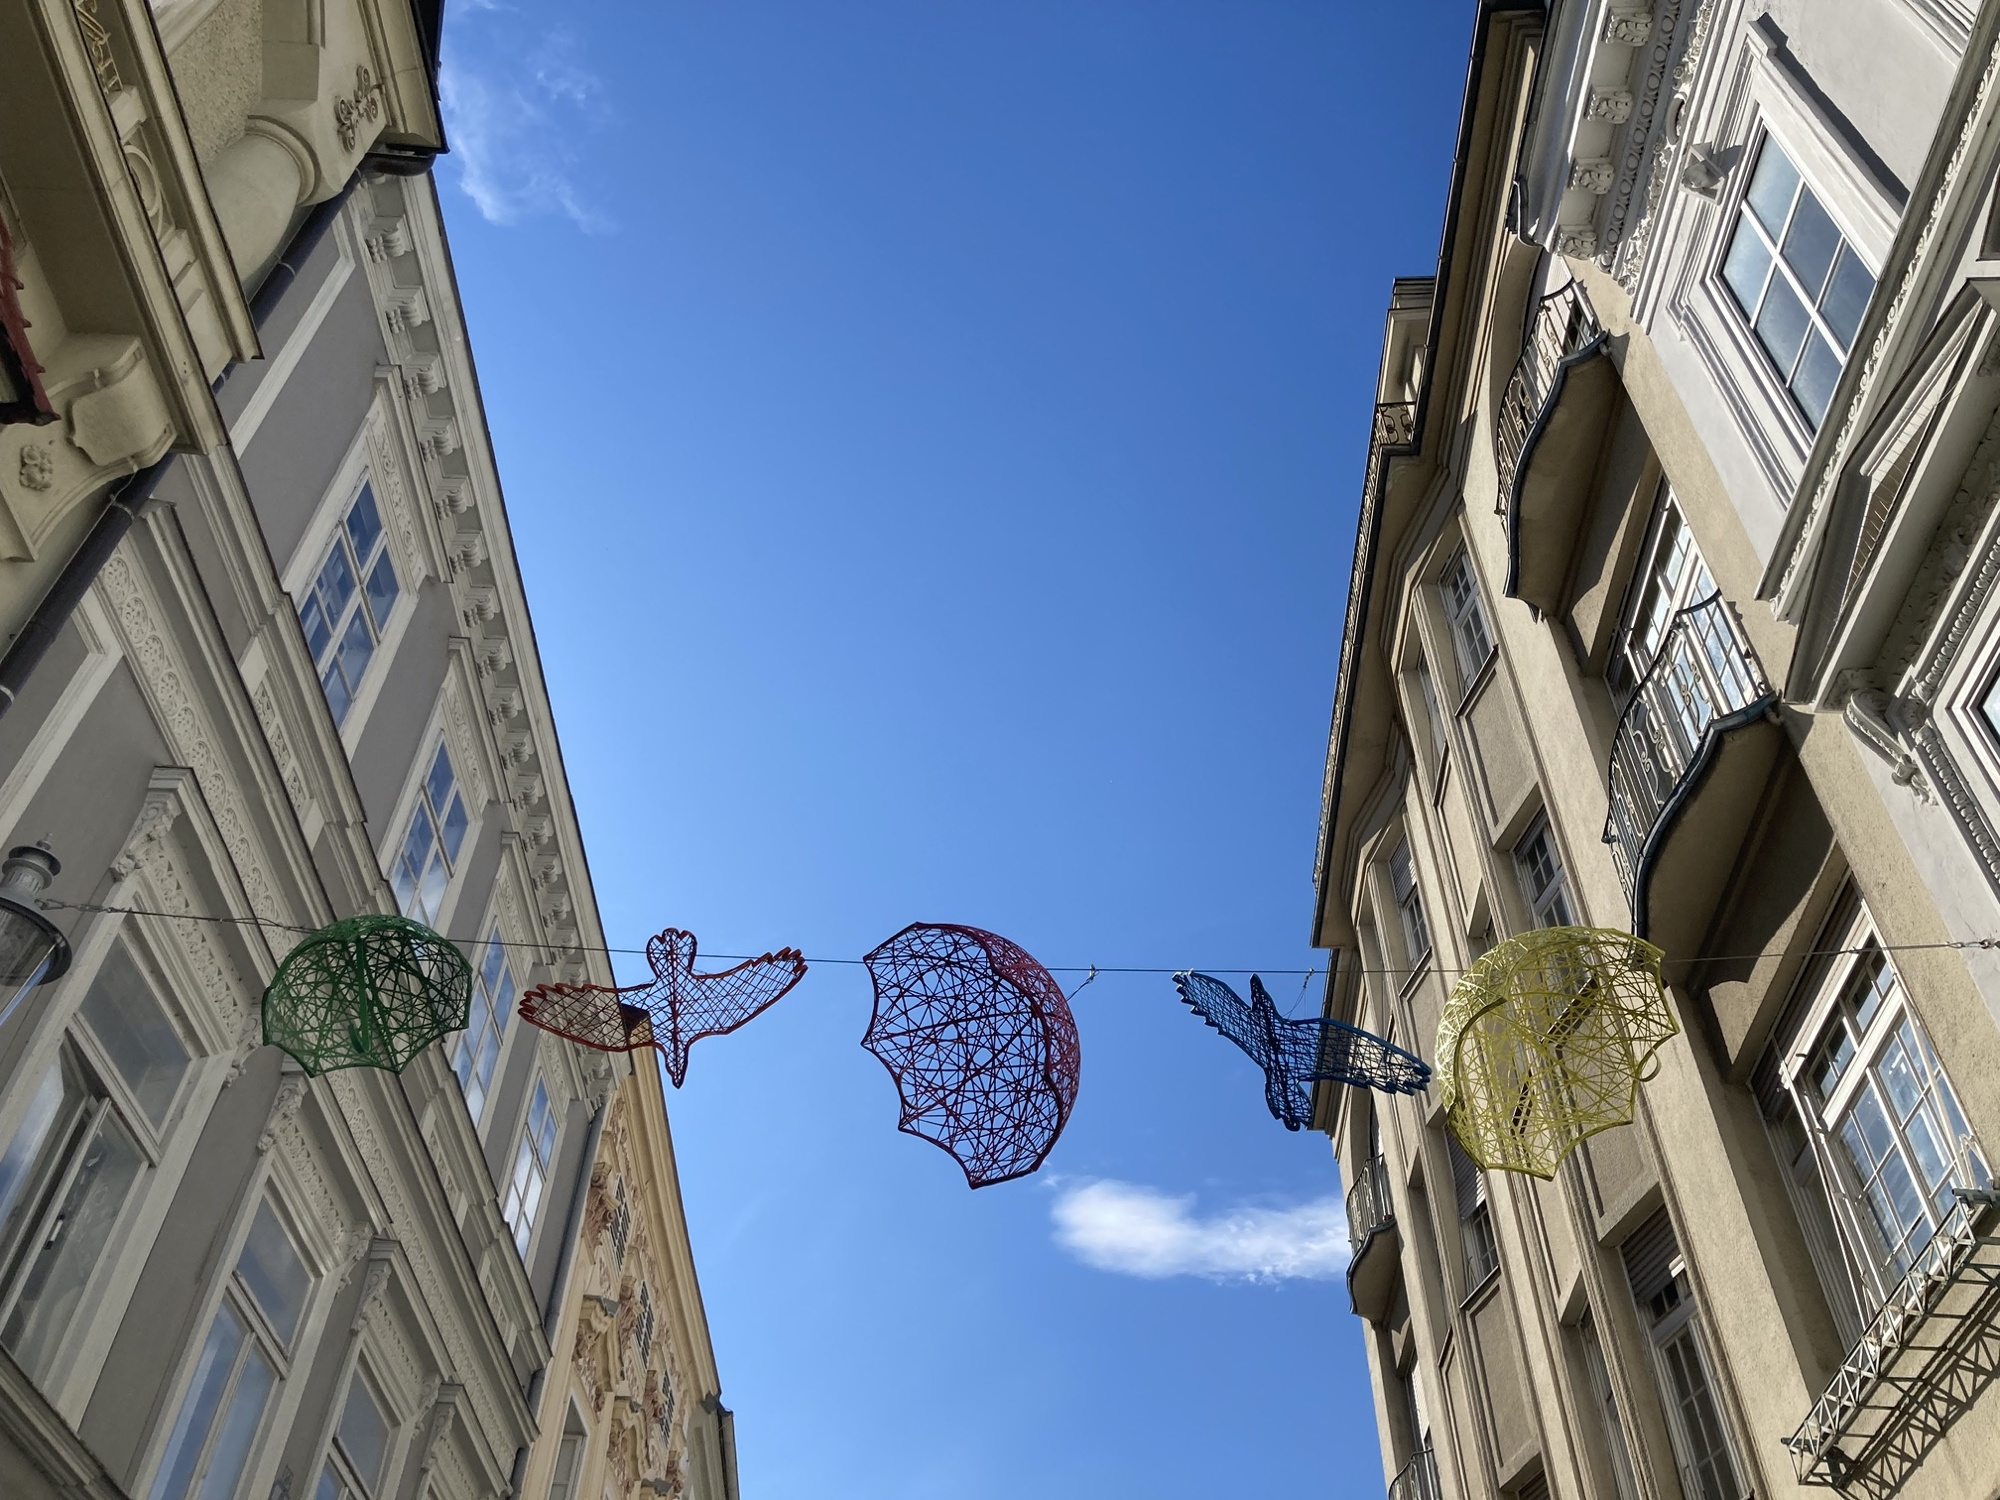 Blick nach oben, zwischen zwei Häuserfluchten ist Dekoration aufgespannt: aus Metallgittern bestehende Regenschirme und Vögel in versch. Farben